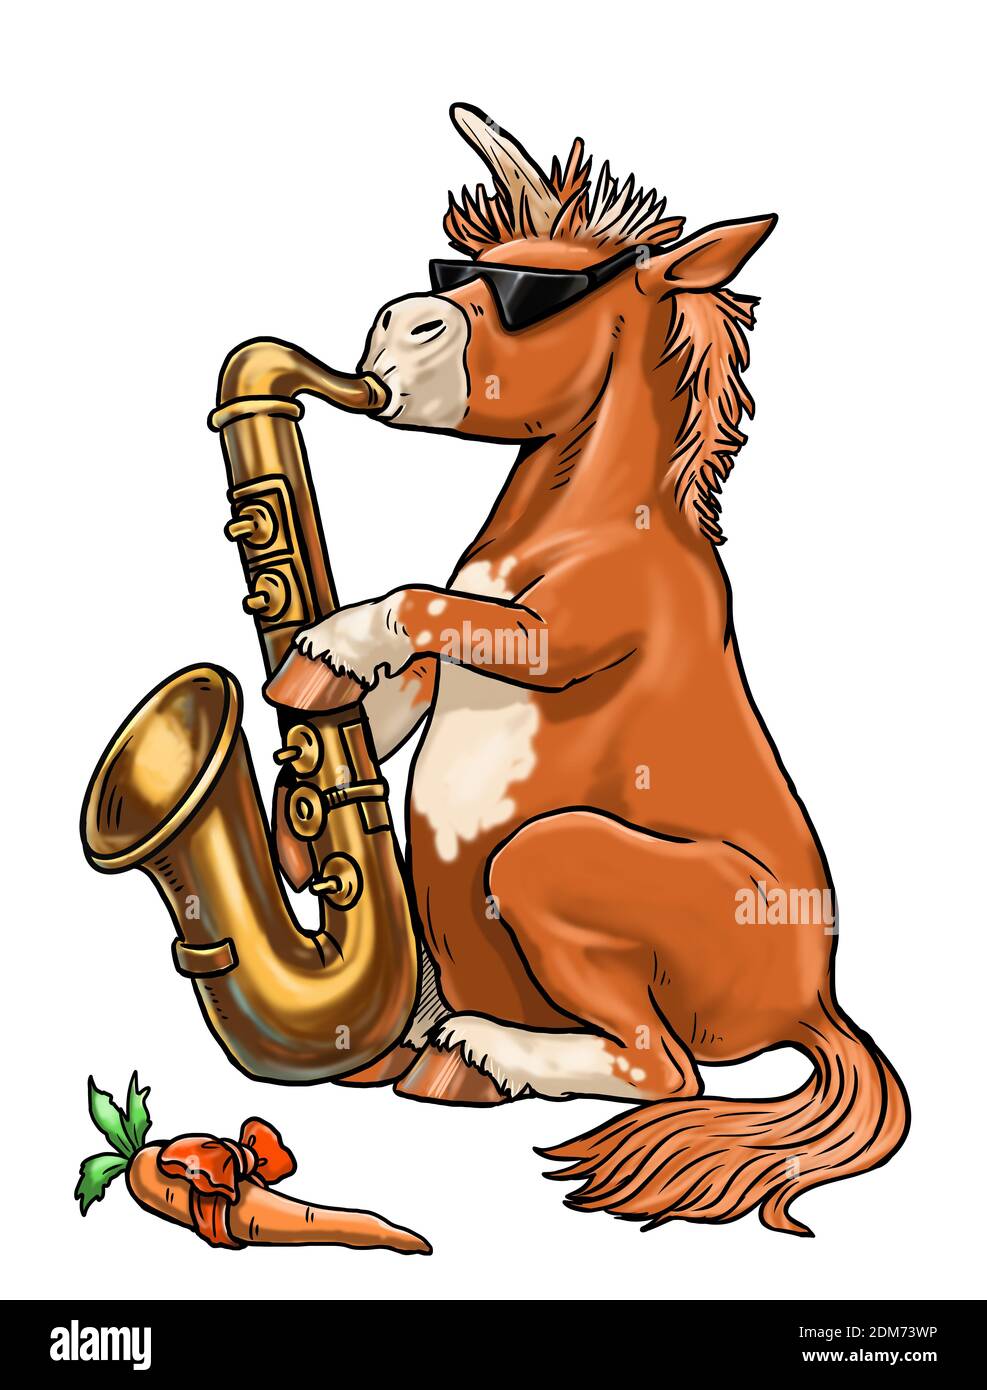 Drôle unicorn joue du jazz avec le saxophone. Modèle de coloriage pour les enfants et les amoureux du cheval. Banque D'Images